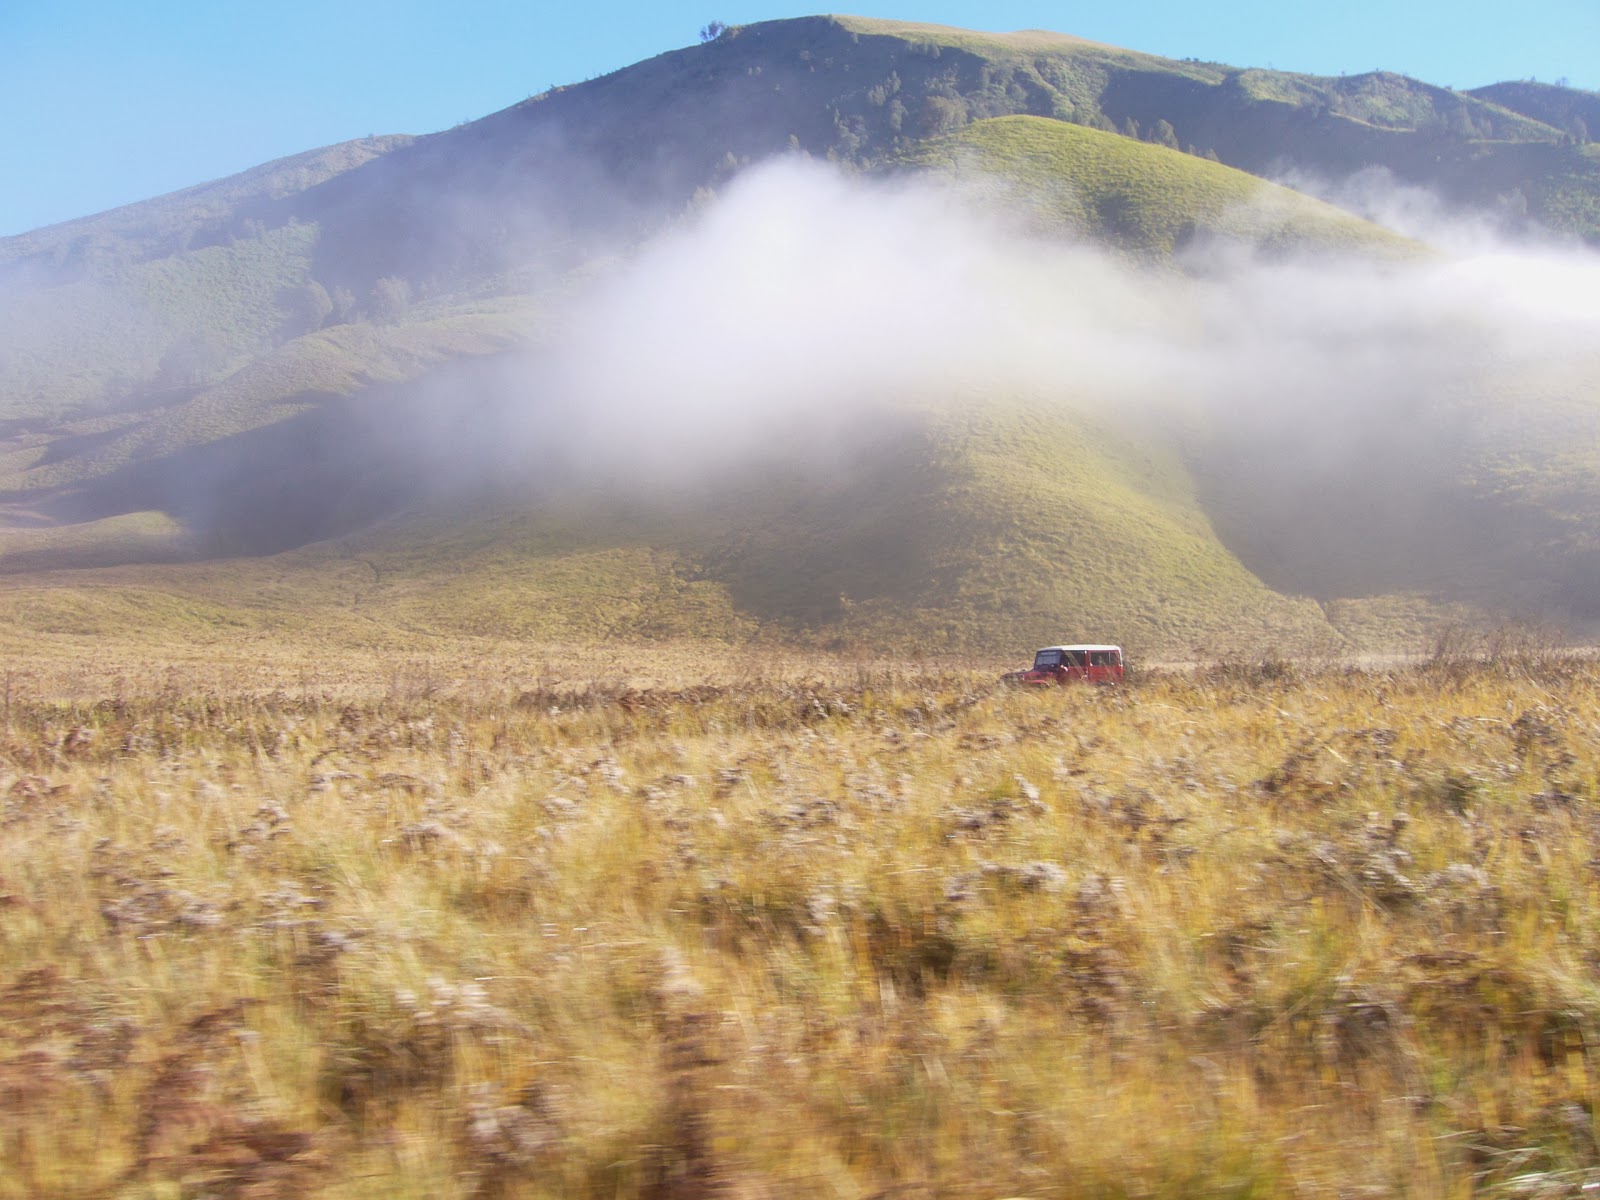  Gambar  pemandangan  panorama alam wisata gunung  bromo  